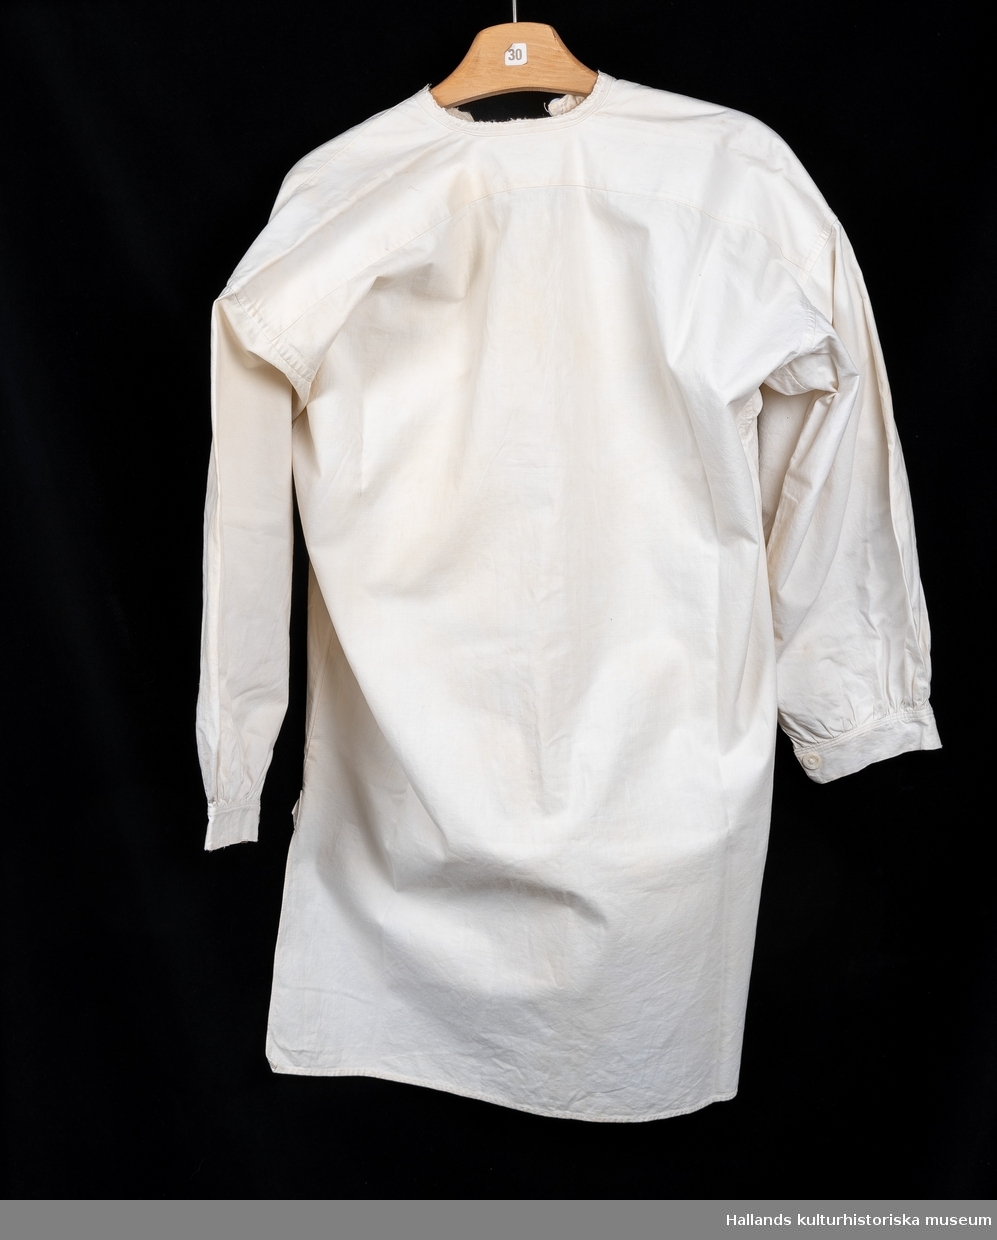 Skjorta, så kallad slåtterskjorta, använd vid slåtter. Av vit bomull. Bakstycket går något längre ner än framstycket. Långärmad med knapp vid manschetten. Sprund med knapp vid halsen. Rund hals. Märkt: "K", med korsstygn. En lagning. Lite sliten i kanterna.